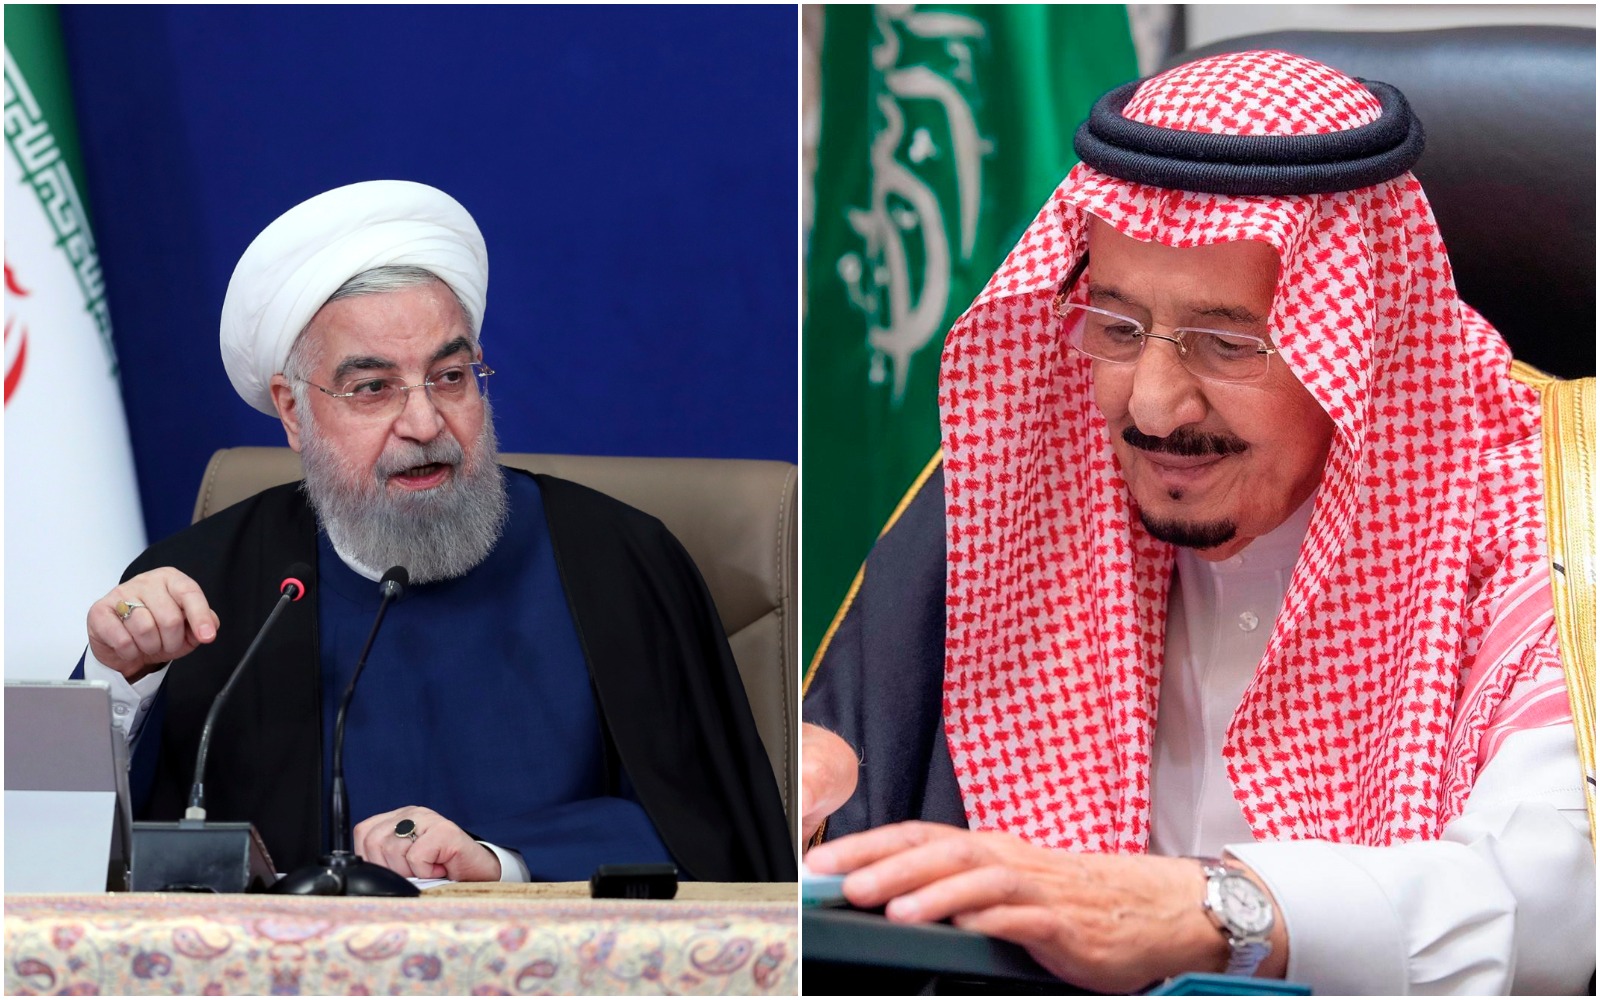 المباحثات الإيرانية السعودية قد تنتقل إلى سلطنة عمان وفق صحيفة التايمز أوف إسرائيل watanserb.com